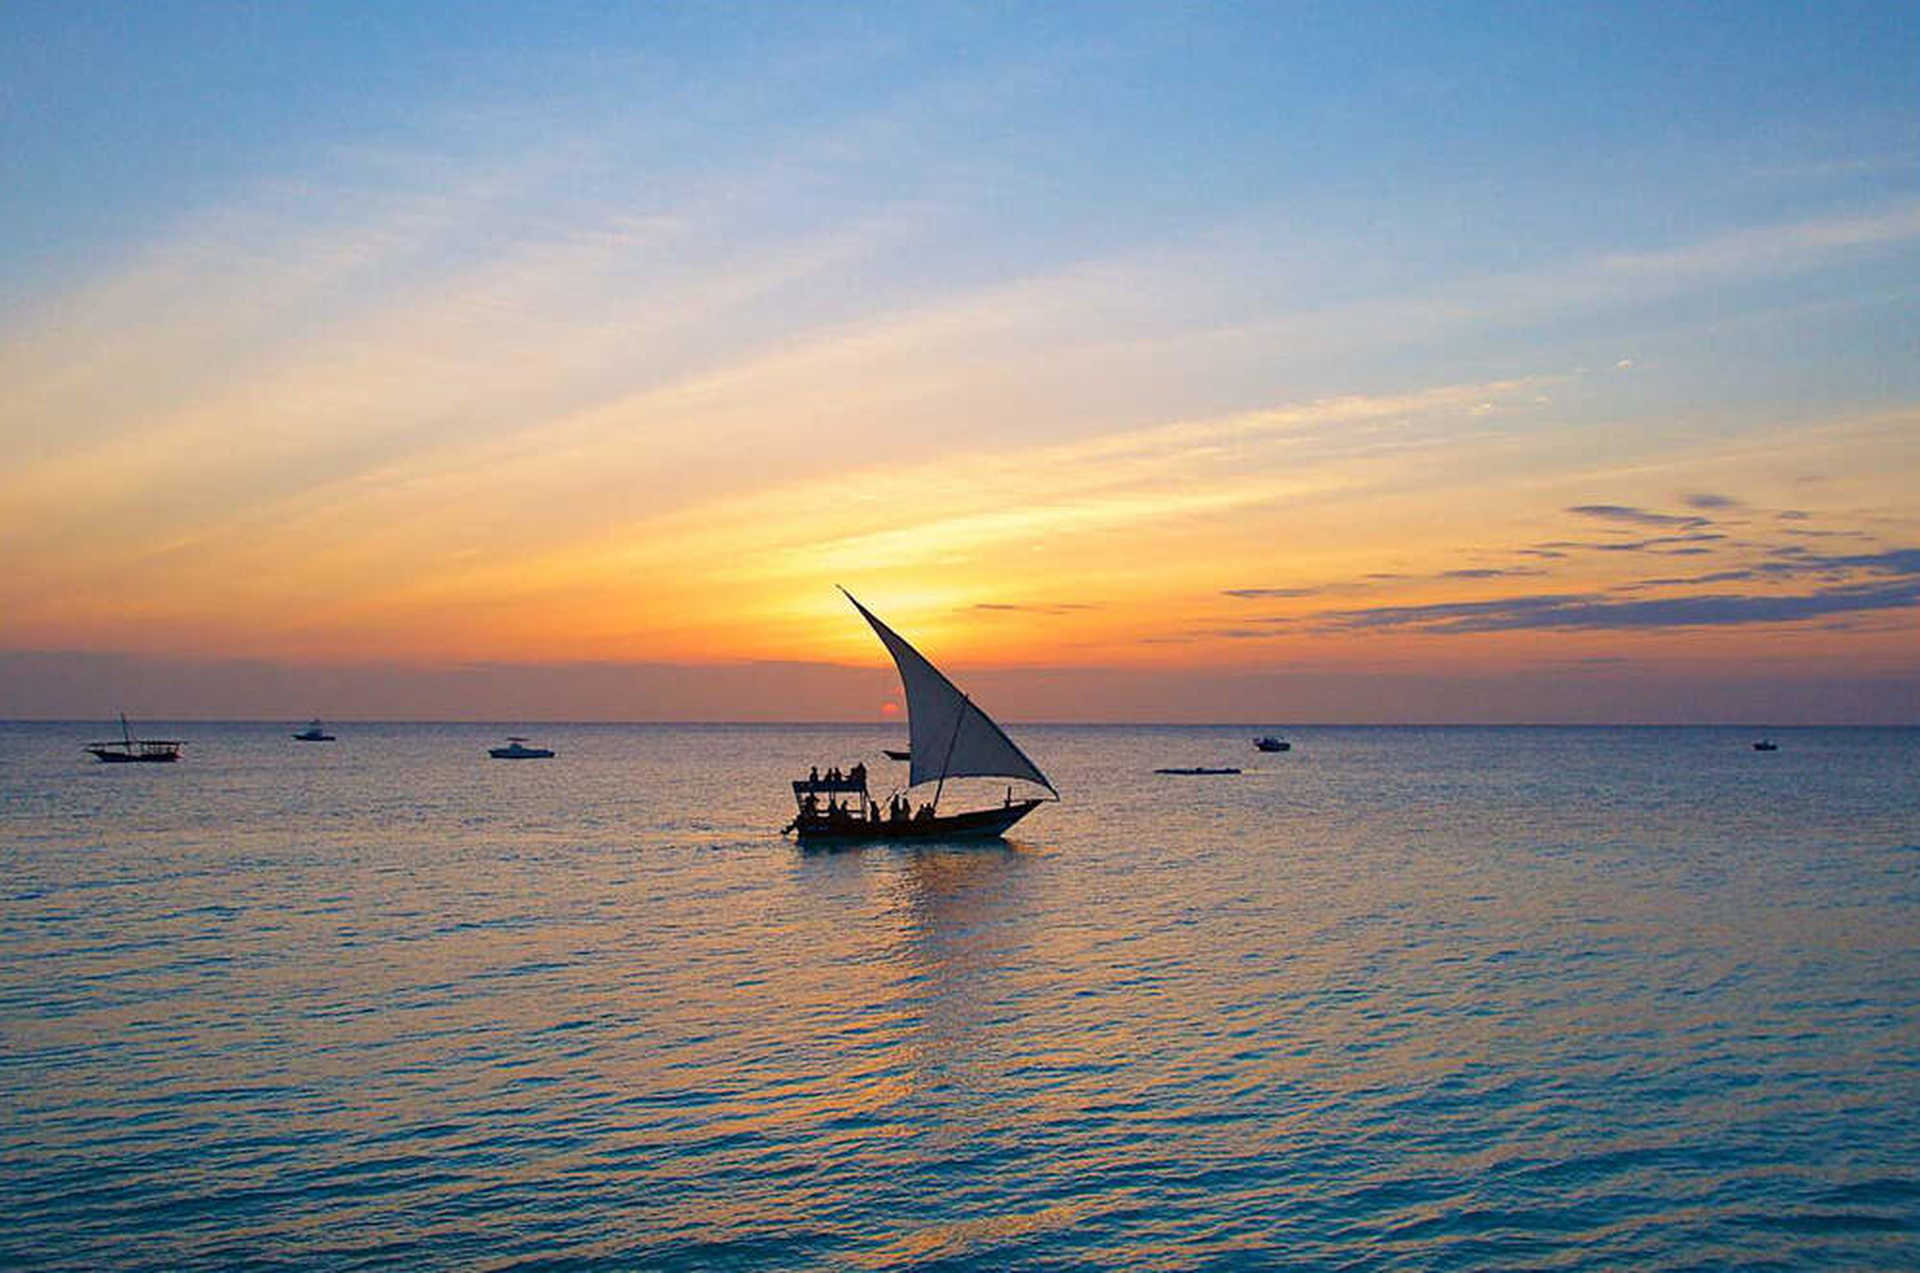 Sunset on Zanzibar